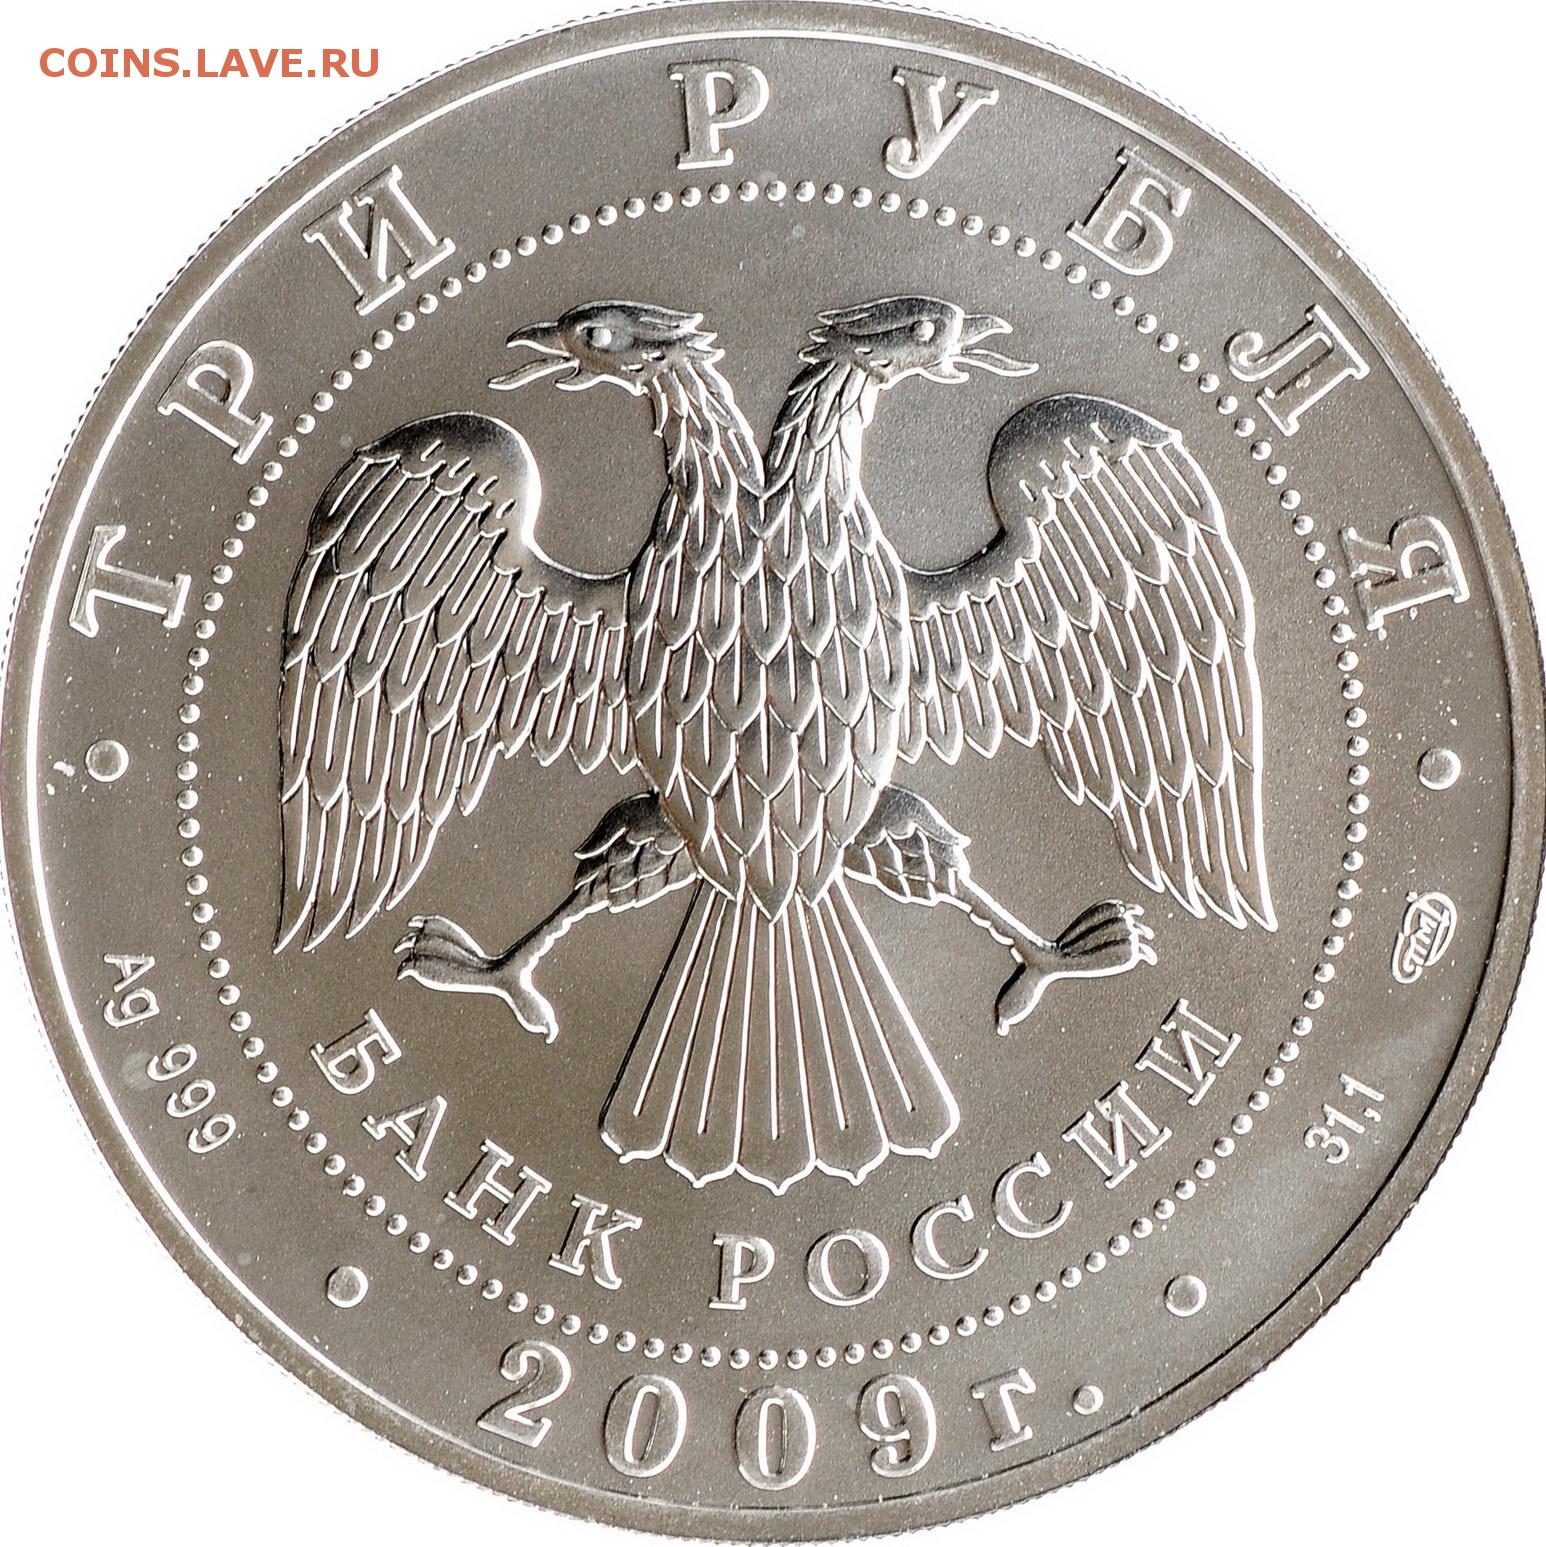 Выпуск 3 рубля. Монета 3 рубля 2023. Победоносец 3 рубля 2009. AG 999 монета.